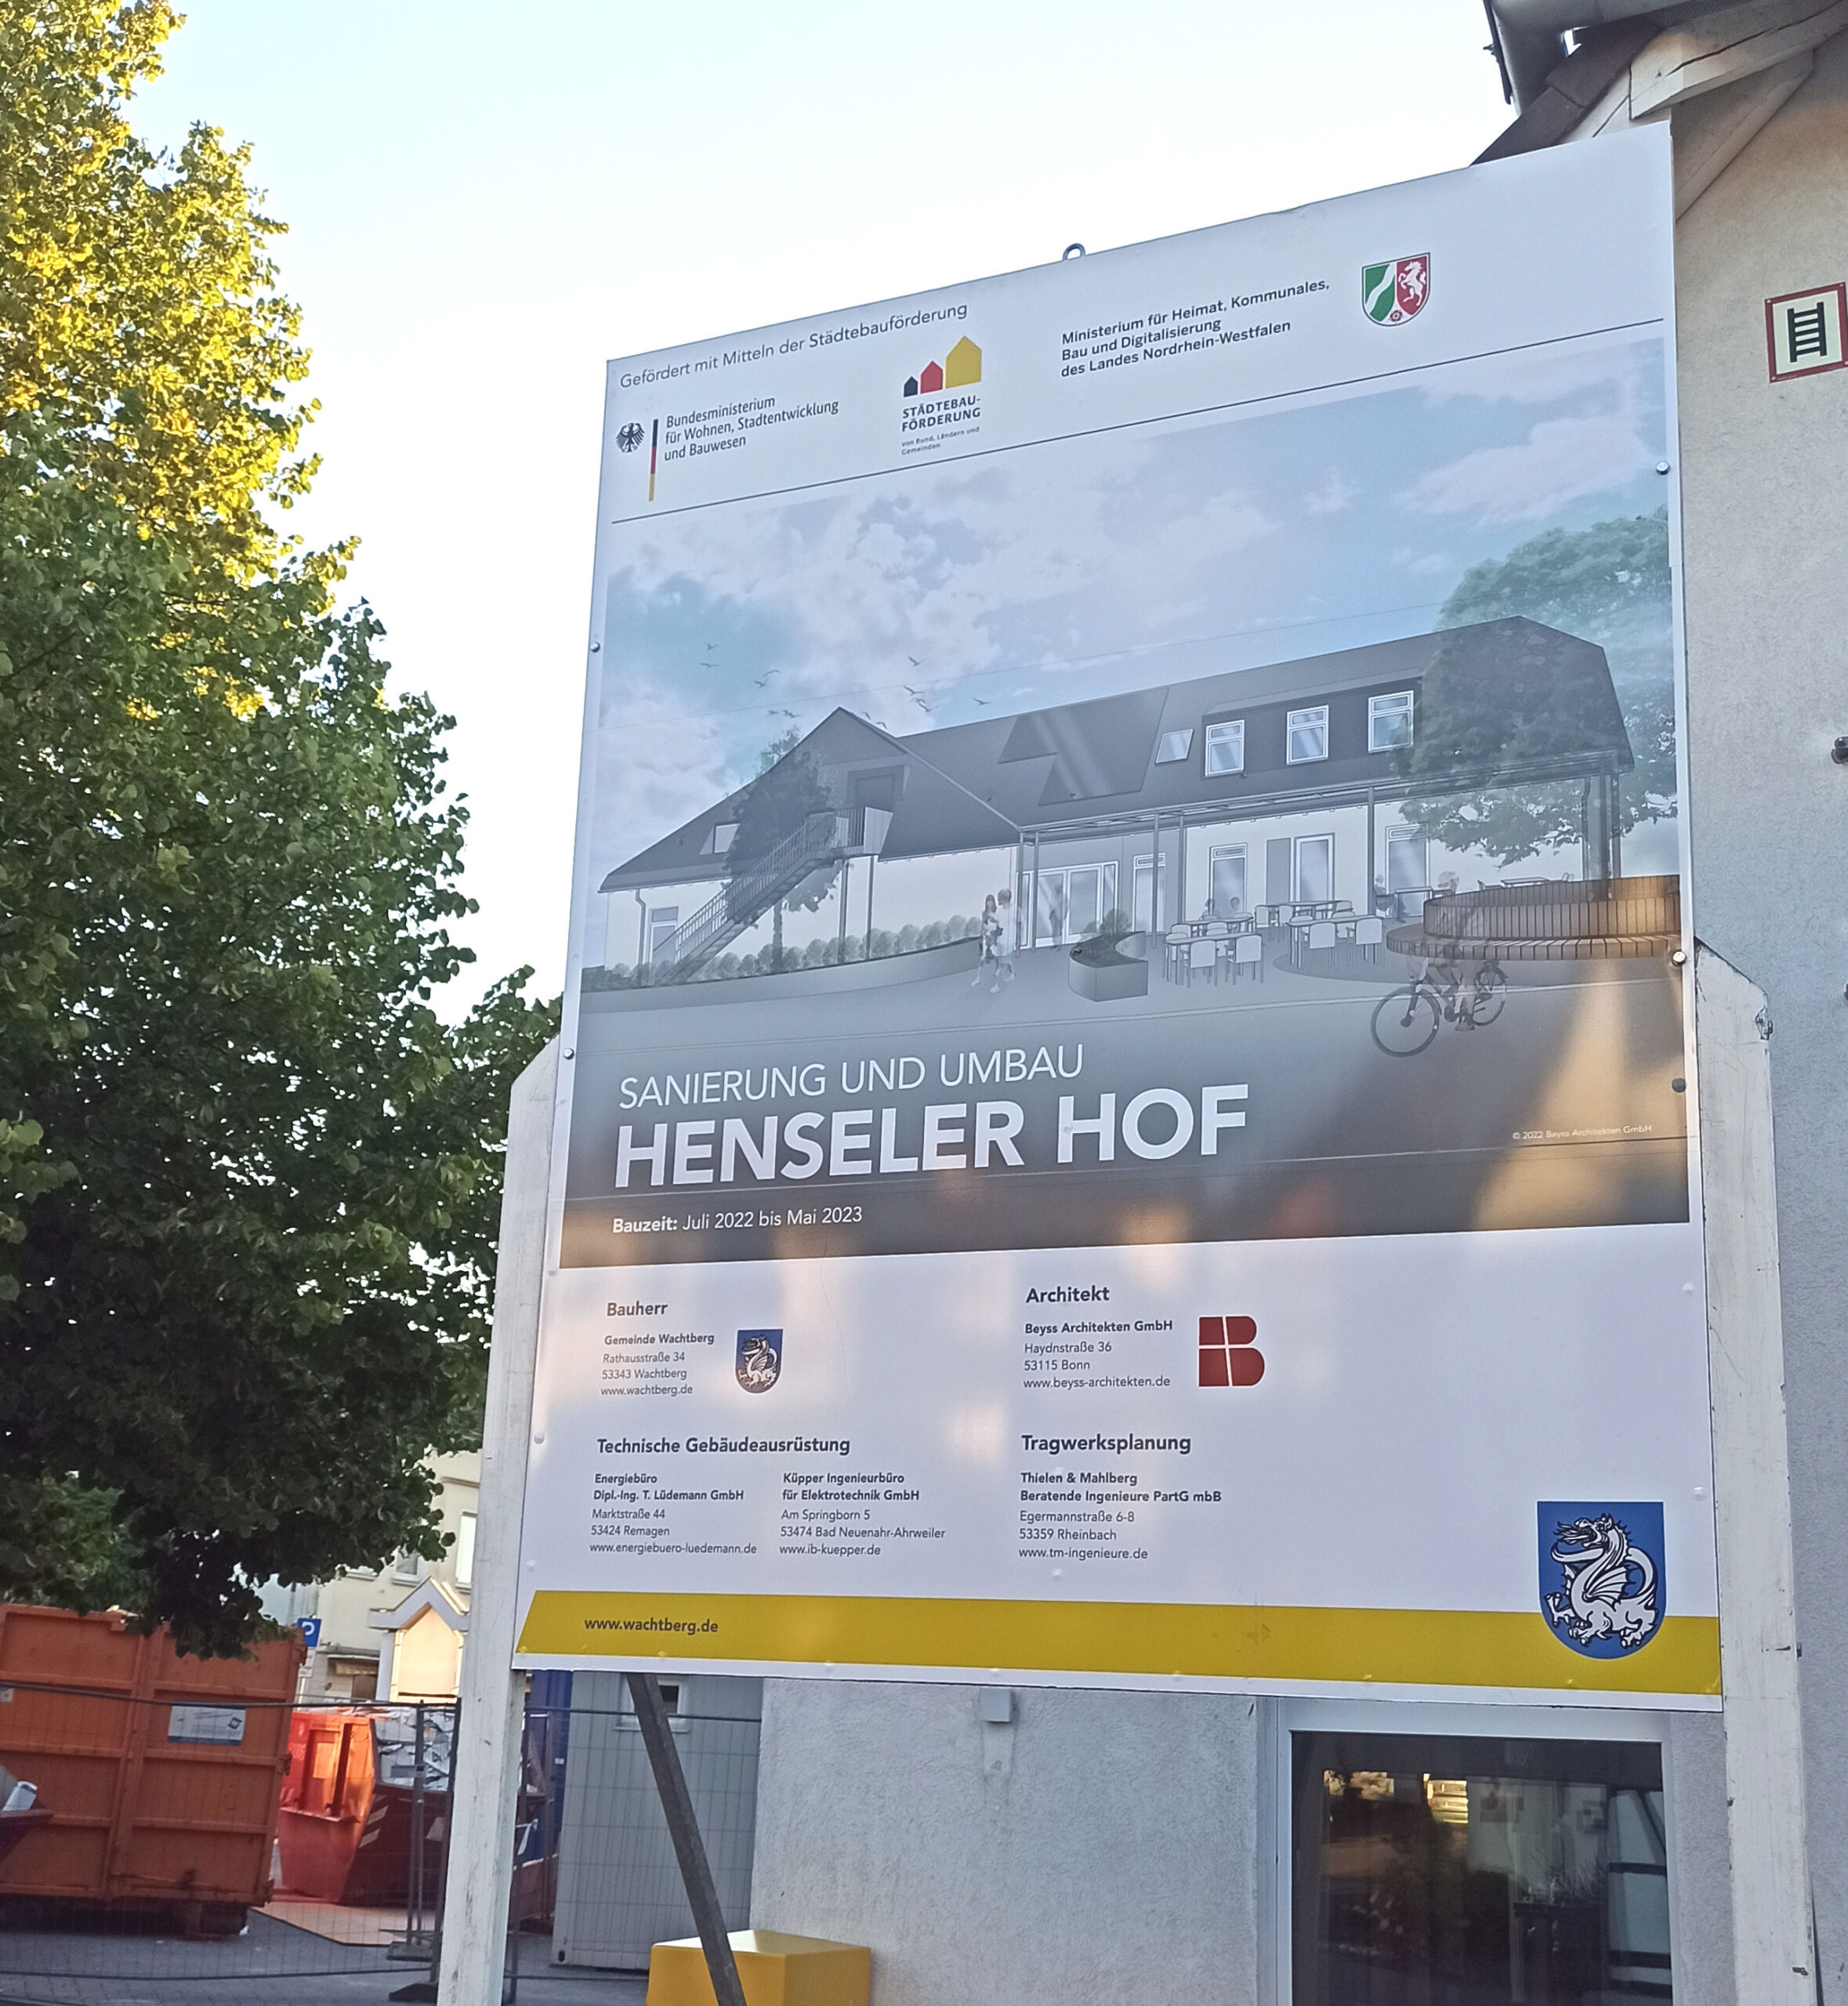 Der Vorplatz "Henseler Hof" in Niederbachem wurde im Stil der 70-er Jahre vollständig versiegelt. Jetzt wird er durch die massiven Interventionen der Wachtberger Parents wieder begrünt - wie er vor der Millioneninvestition auch schon war.